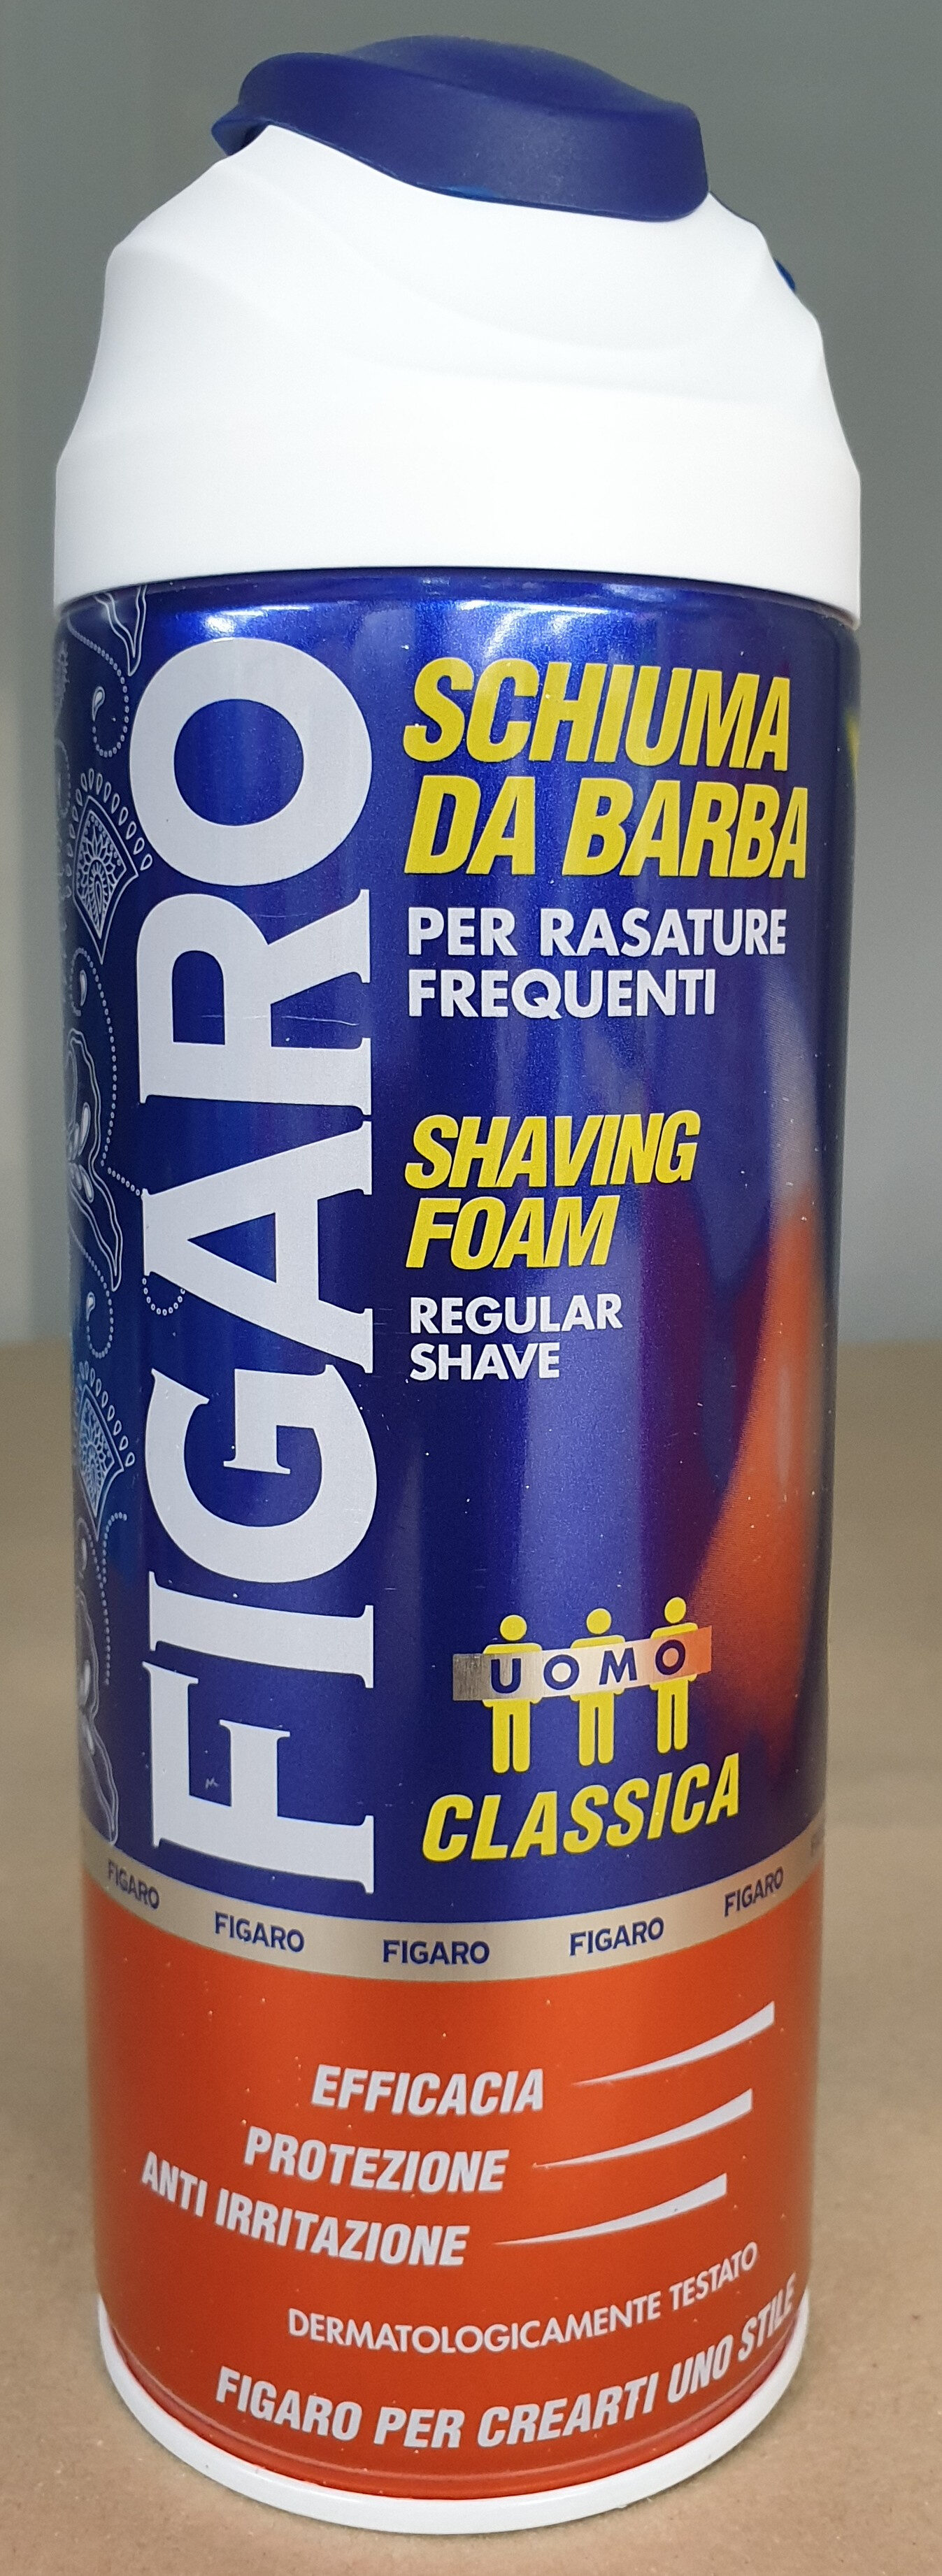 Figaro Schiuma da Barba Classica - Product - it